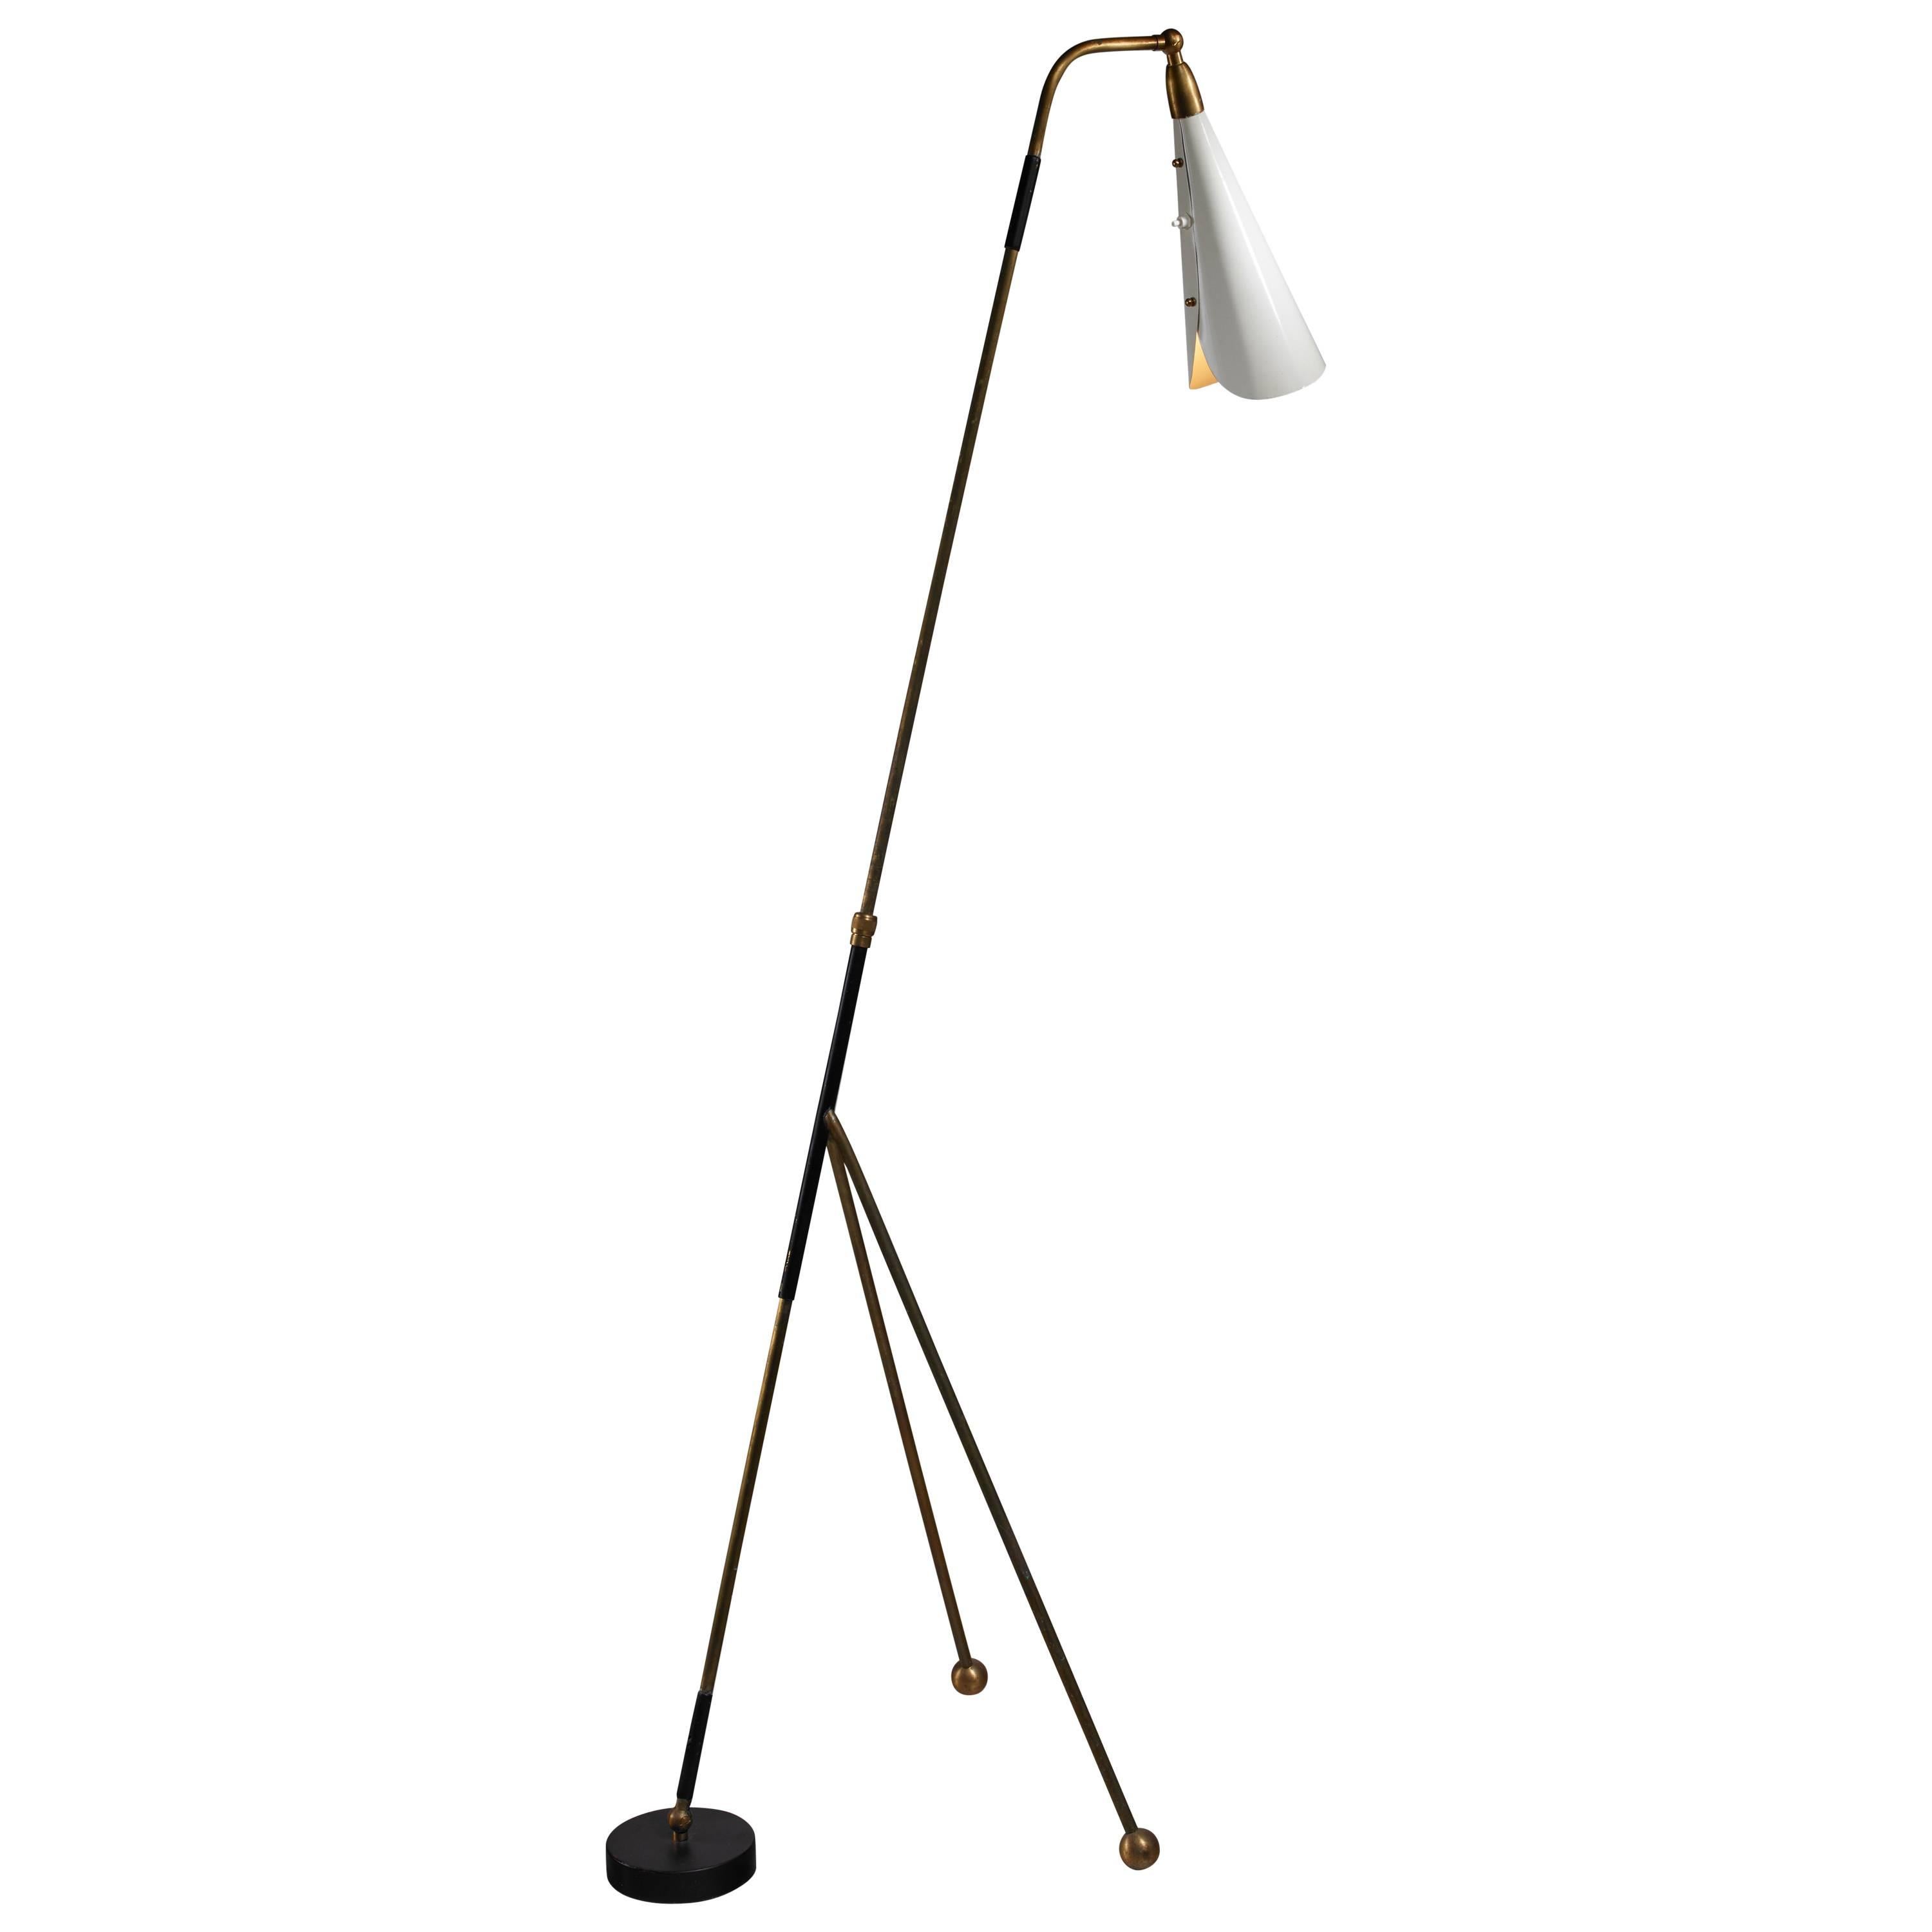 Italian Brass and Metal Floor Lamp, Arteluce Style, 1950s